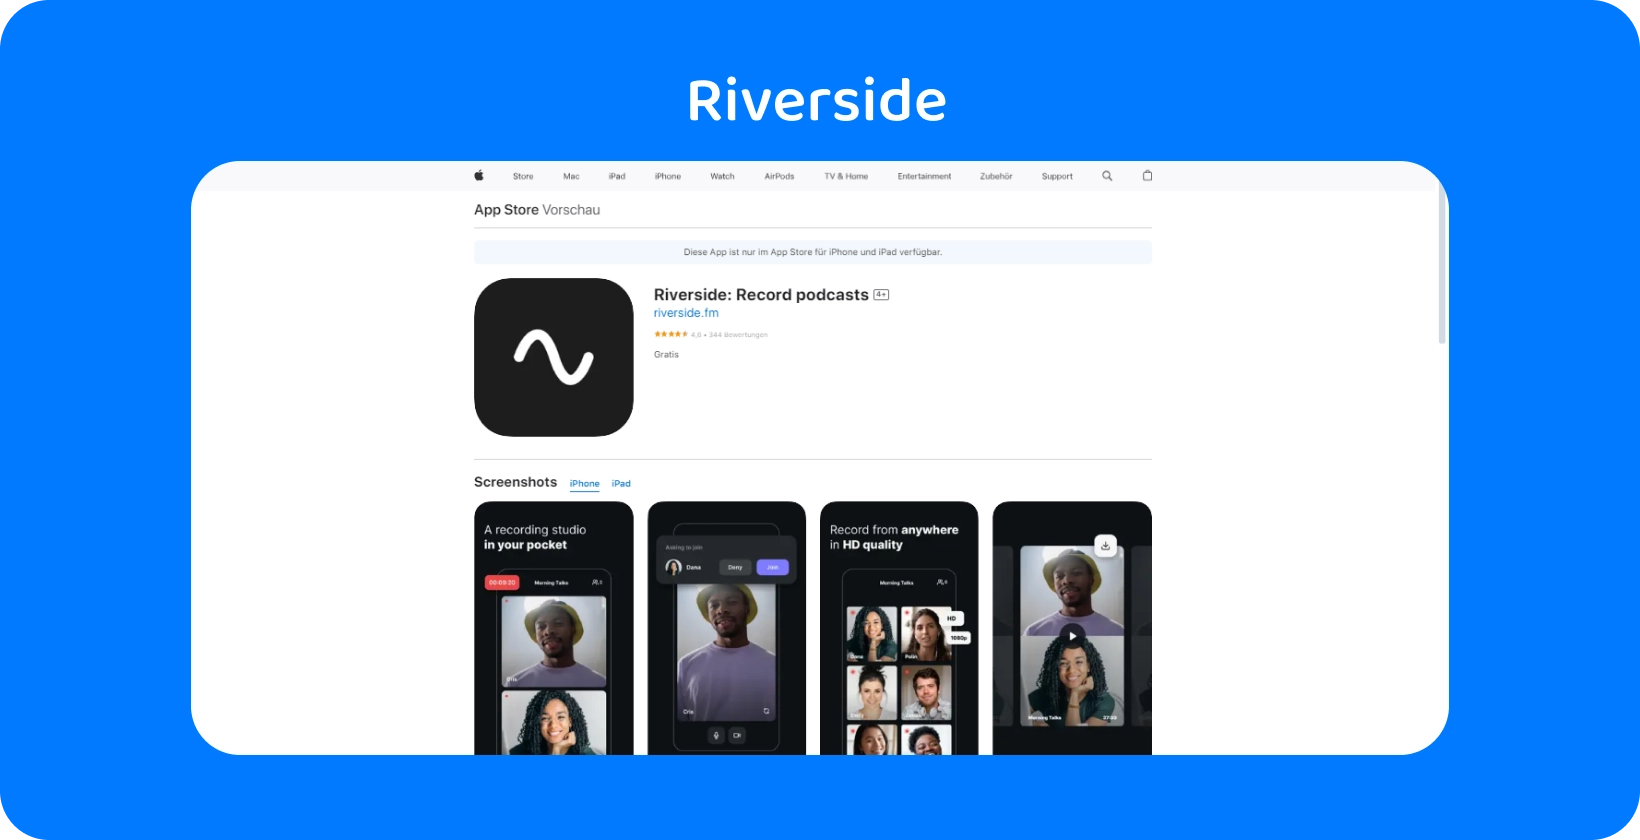 Aplikácia Riverside na App Store zobrazuje nástroje na vysokokvalitné nahrávanie podcastov a rozhovory na diaľku.